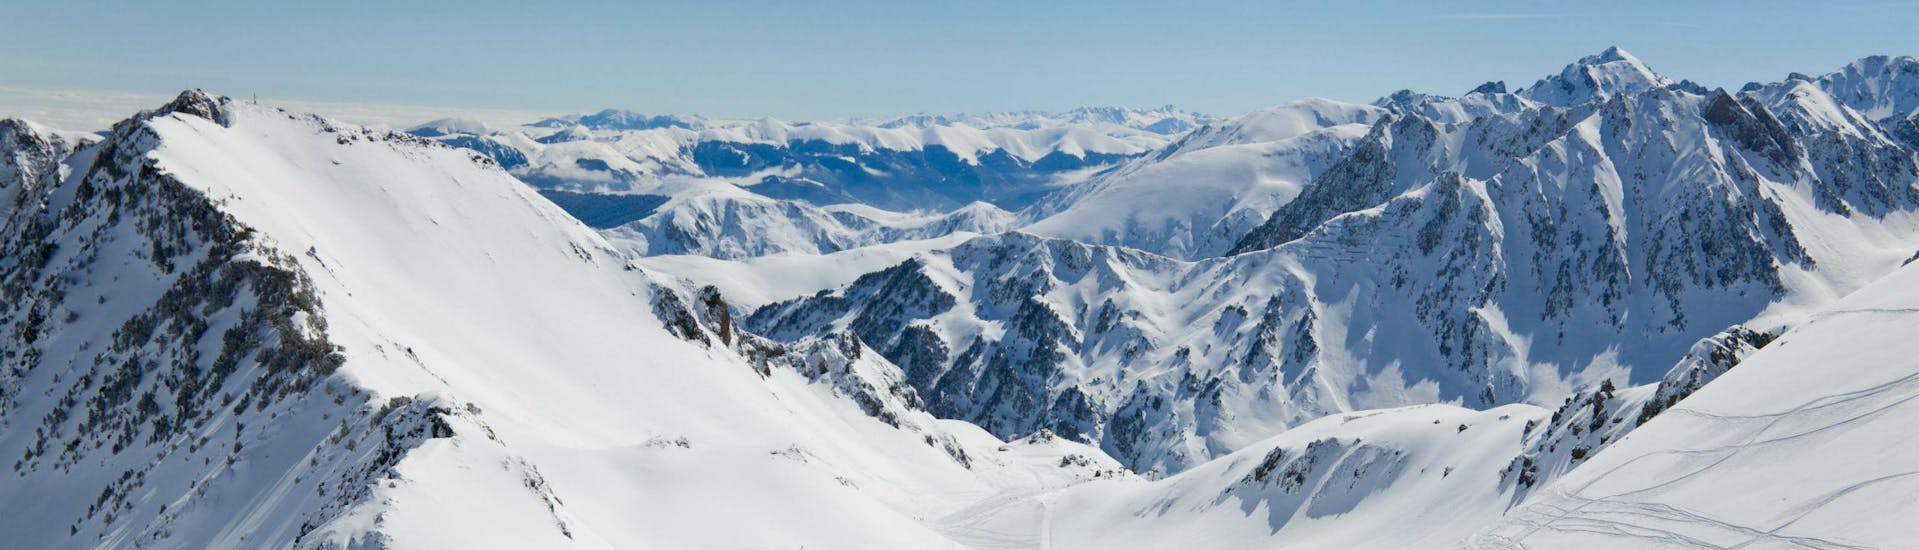 Un snowboarder está admirando la impresionante vista de los Pirineos nevados desde una de las pistas de esquí de La Mongie - Tourmalet, donde las escuelas de esquí locales ofrecen una amplia gama de clases de esquí.